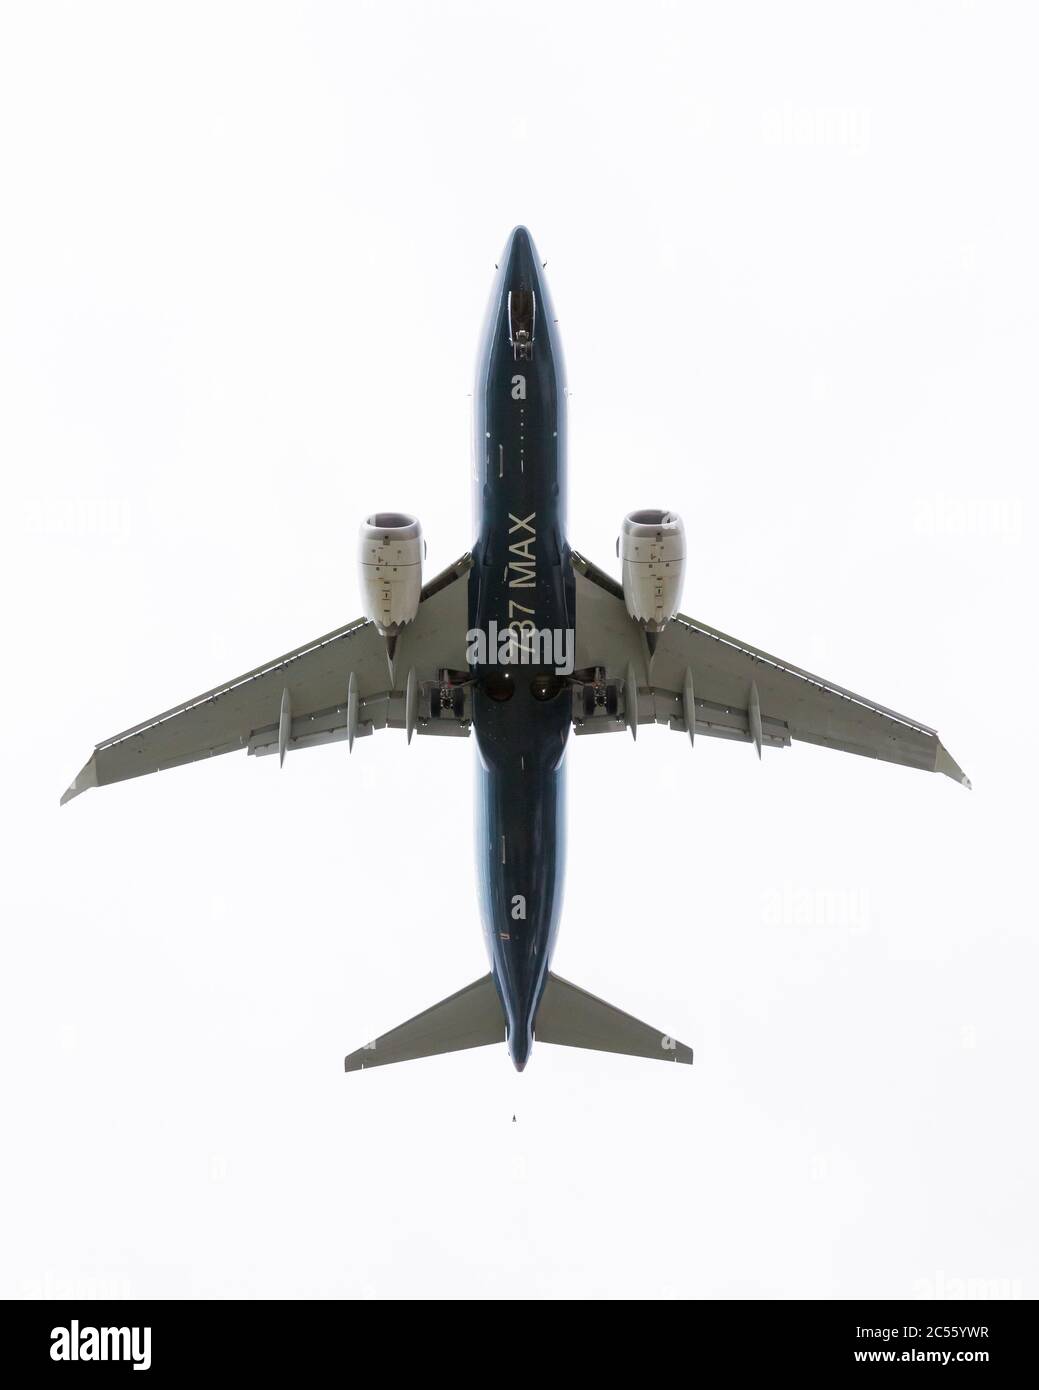 Seattle, Washington DC, USA. Juni 2020. Eine Boeing 737 MAX 7 kommt am Dienstag, 30. Juni 2020, bei einem kritischen Testflug in Seattle zur Landung auf dem Boeing-Feld. Der Flug, der zweite von drei, die mit einem FAA-Piloten an Bord geplant sind, ist der Schlüssel zur Zertifizierung des Flugzeugs seit seiner weltweiten Erdung im Jahr 2019 nach zwei tödlichen Abstürzen. Quelle: Paul Christian Gordon/Alamy Live News Stockfoto